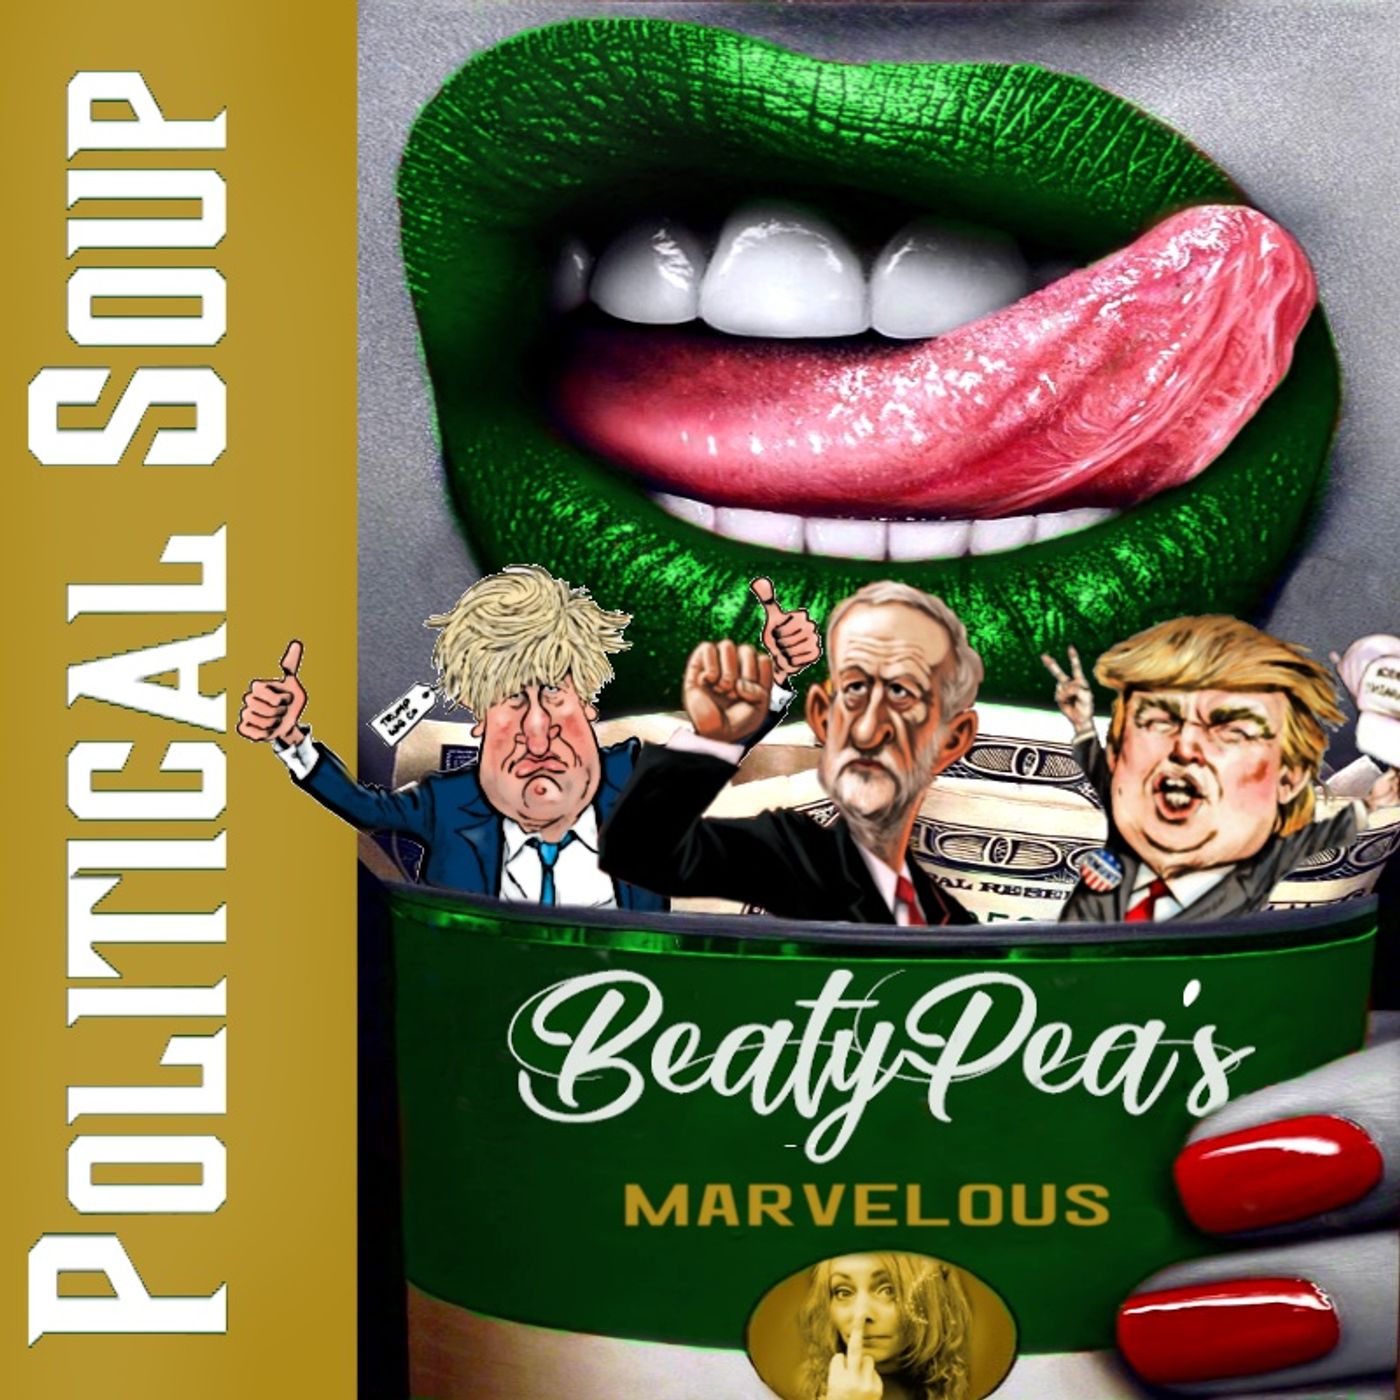 Pea's Marvellous Political Soup